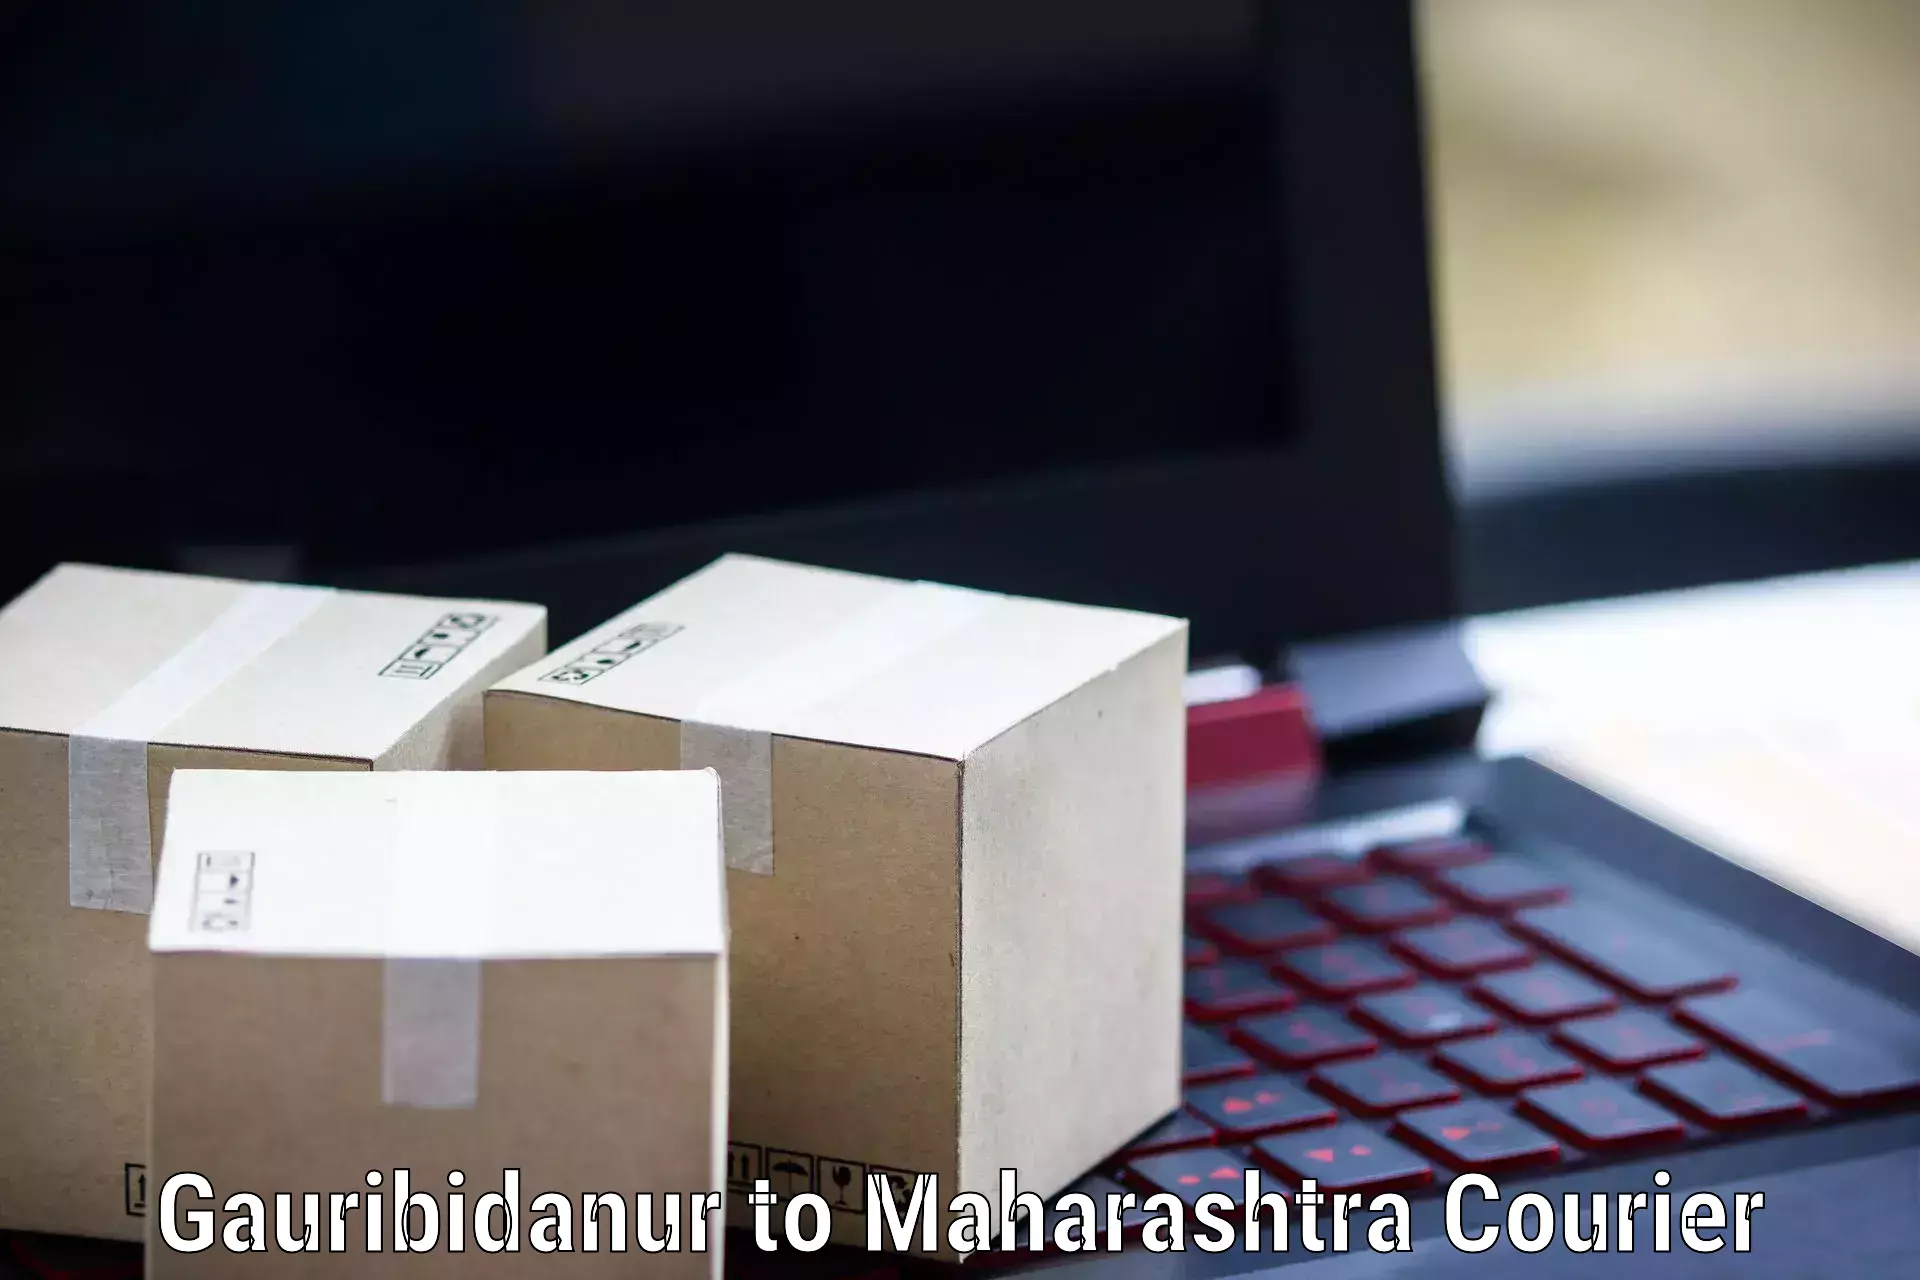 Business courier solutions Gauribidanur to Dadar